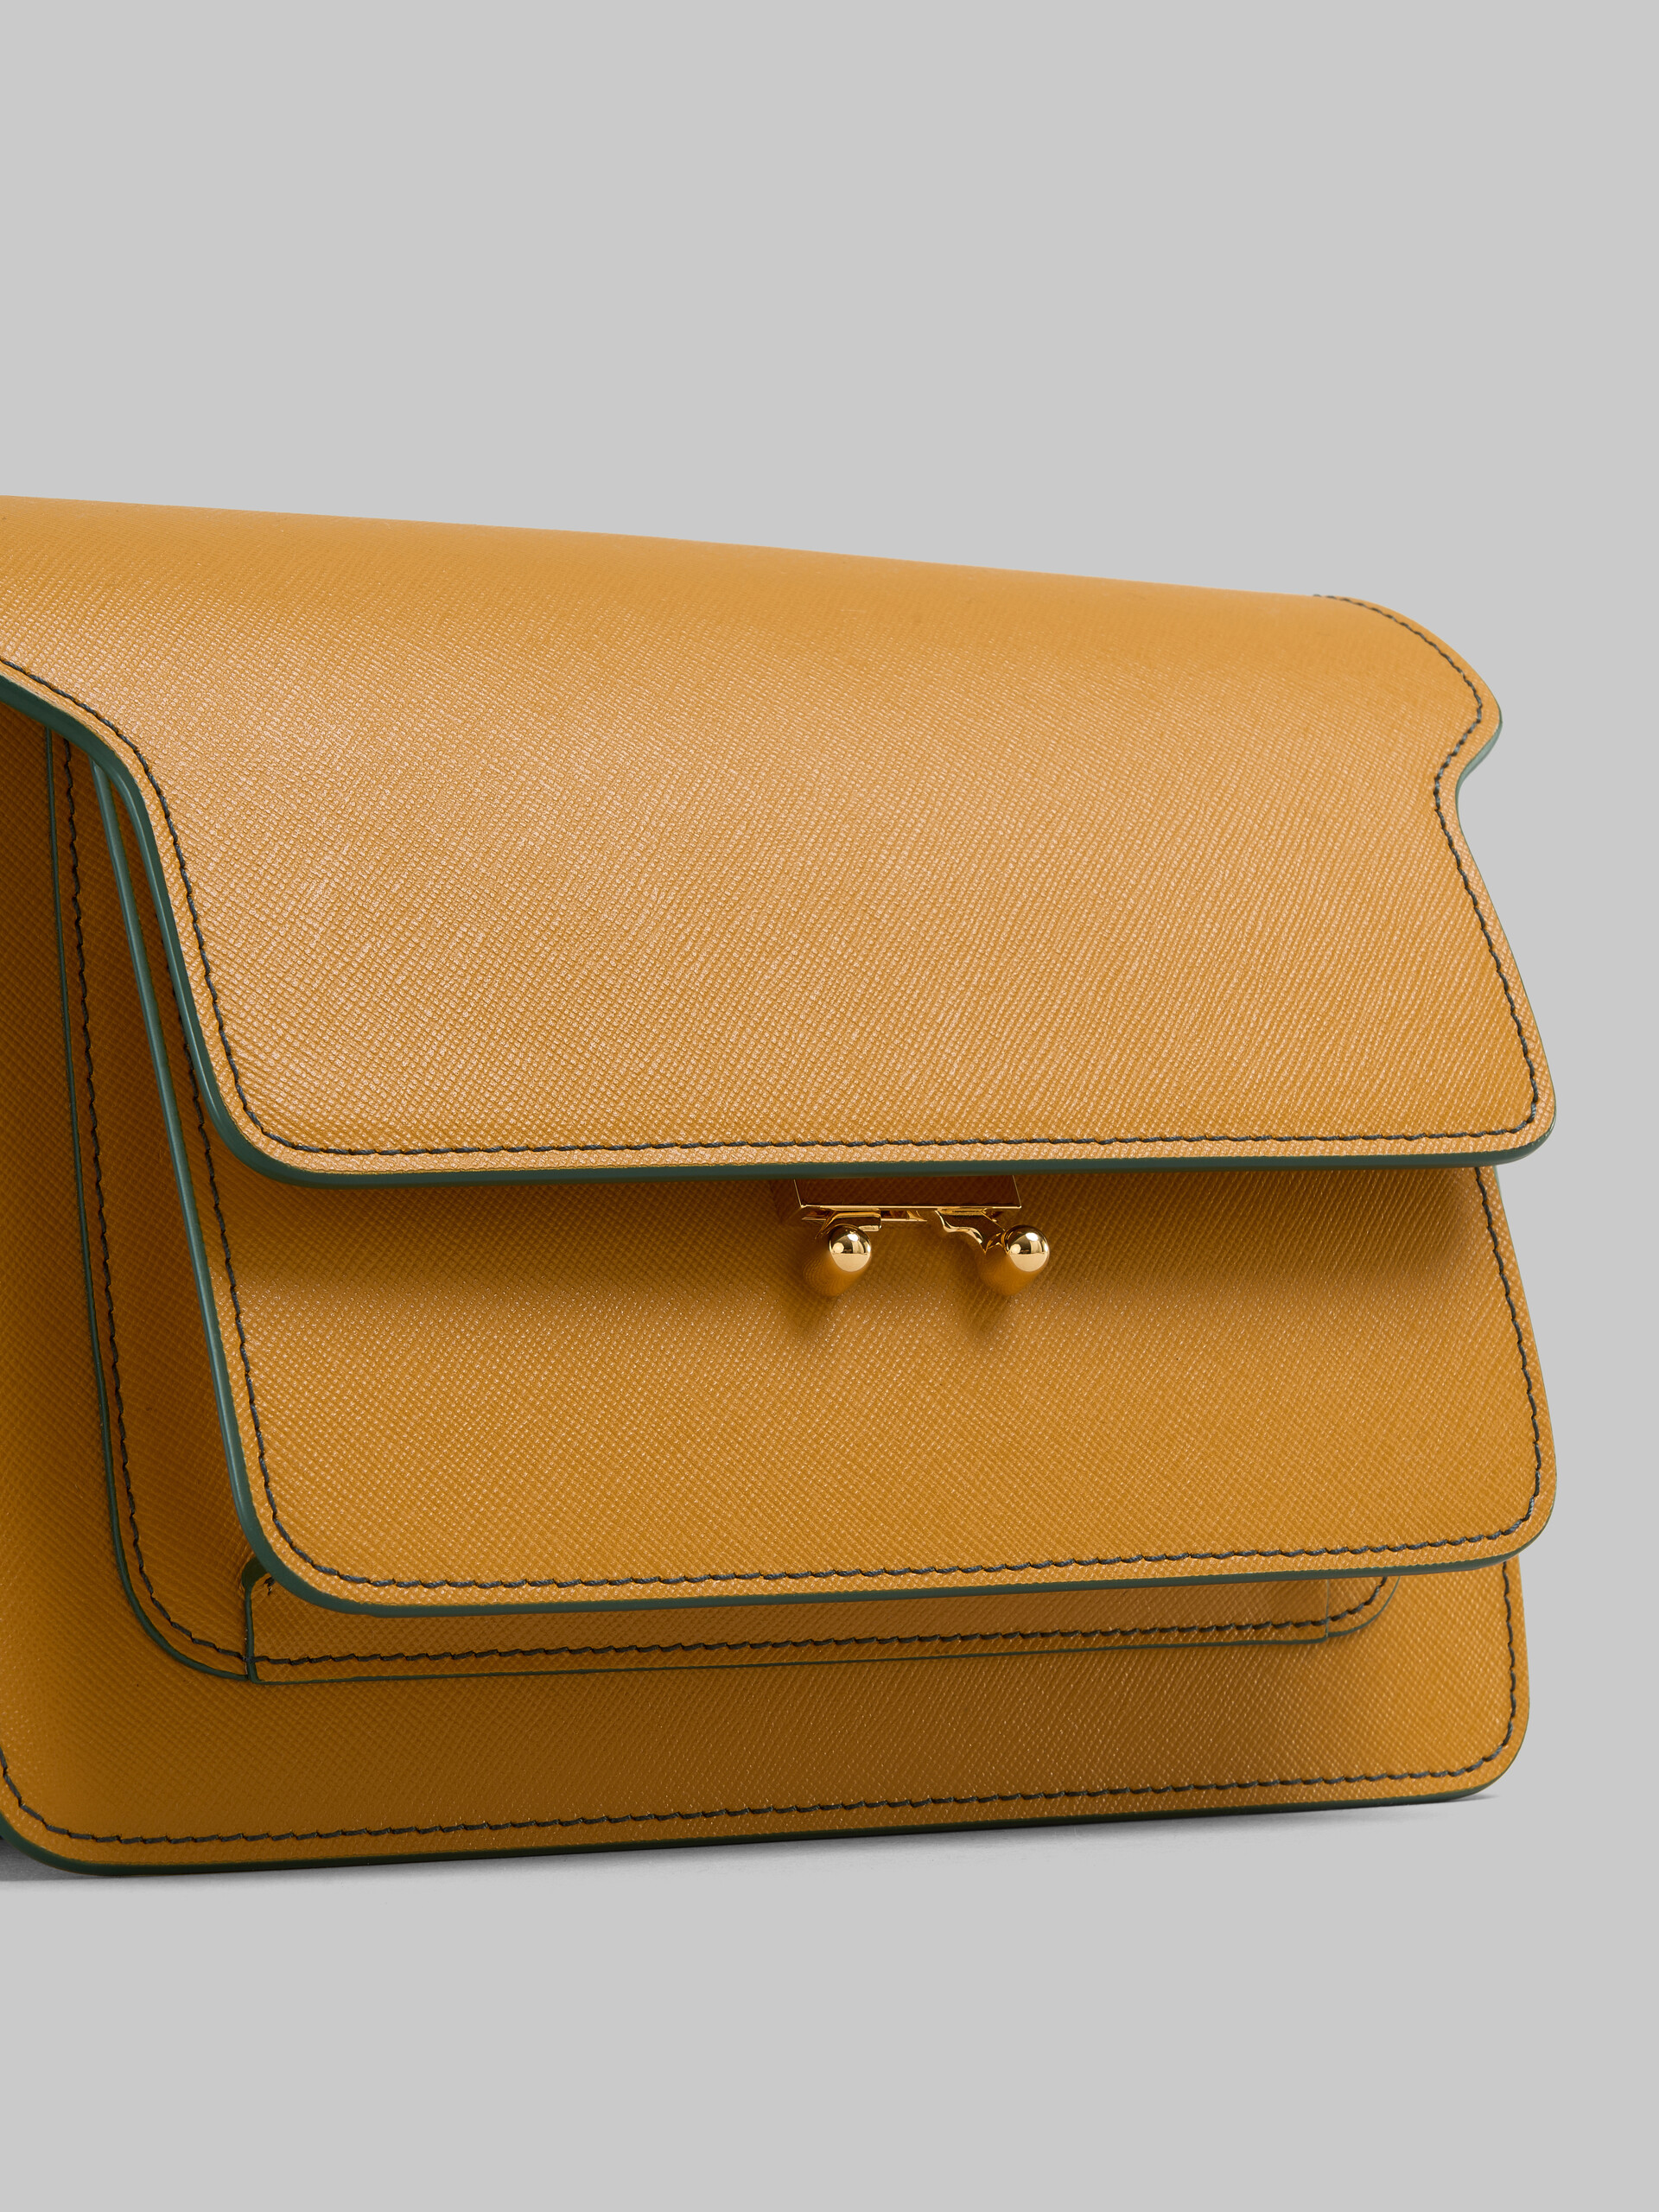 Trunk Bag Media in pelle saffiano beige - Borse a spalla - Image 5